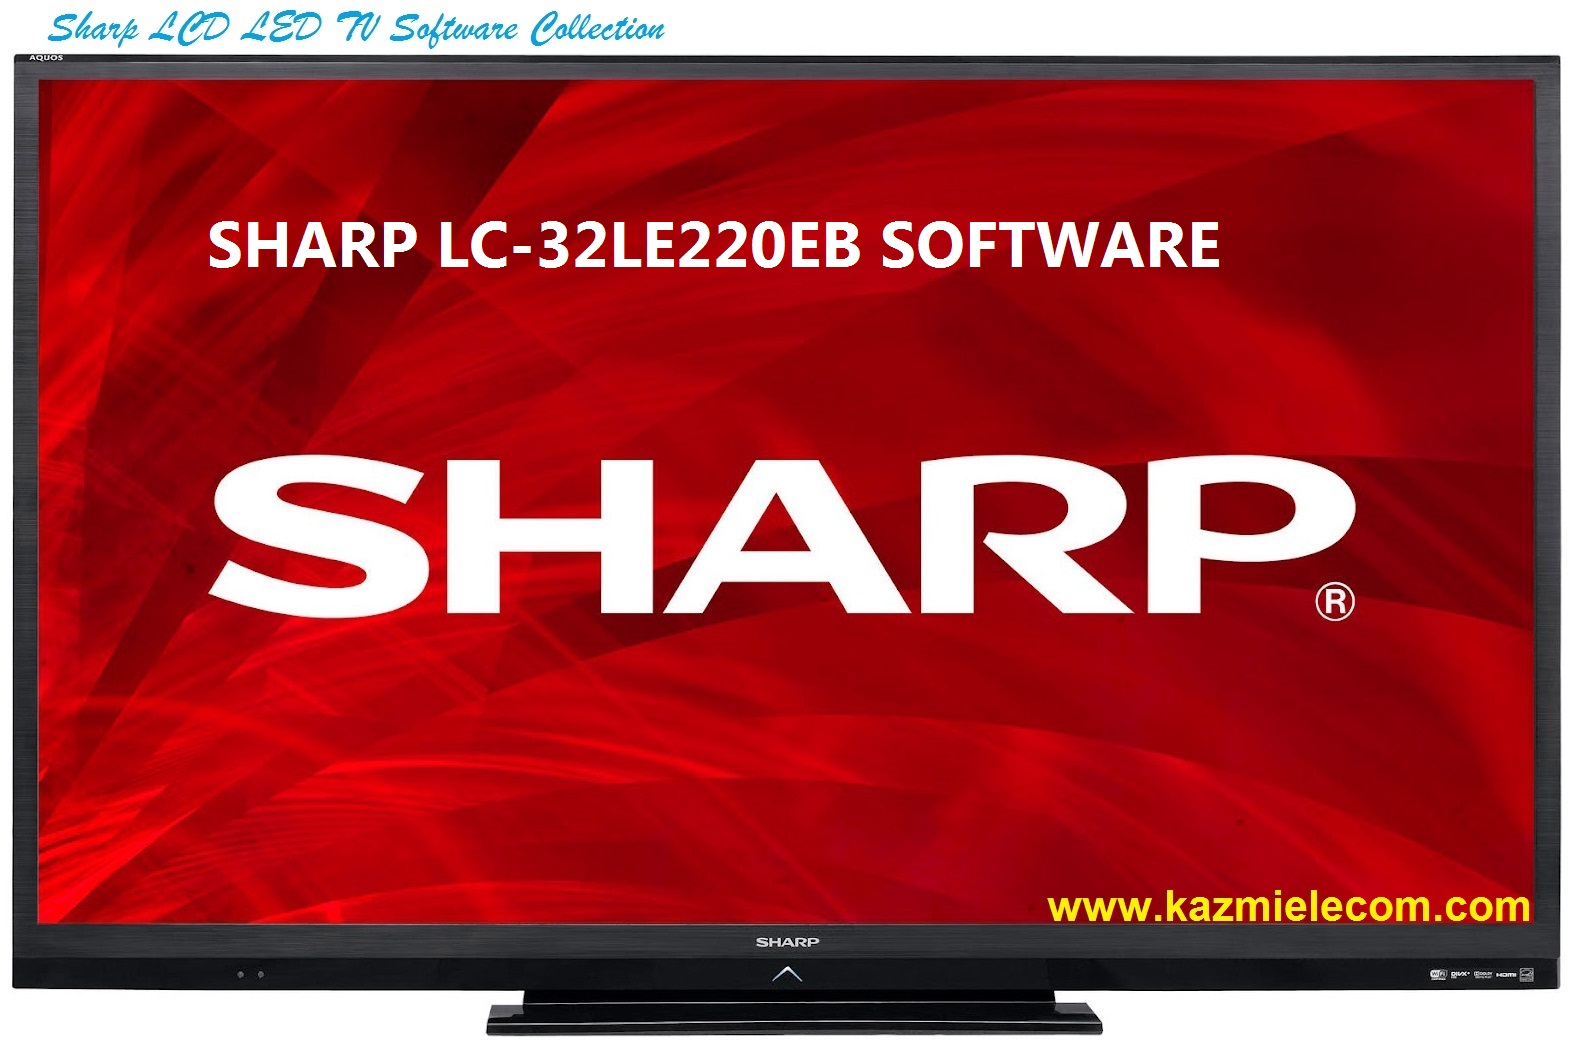 Sharp Lc-32Le220Eb